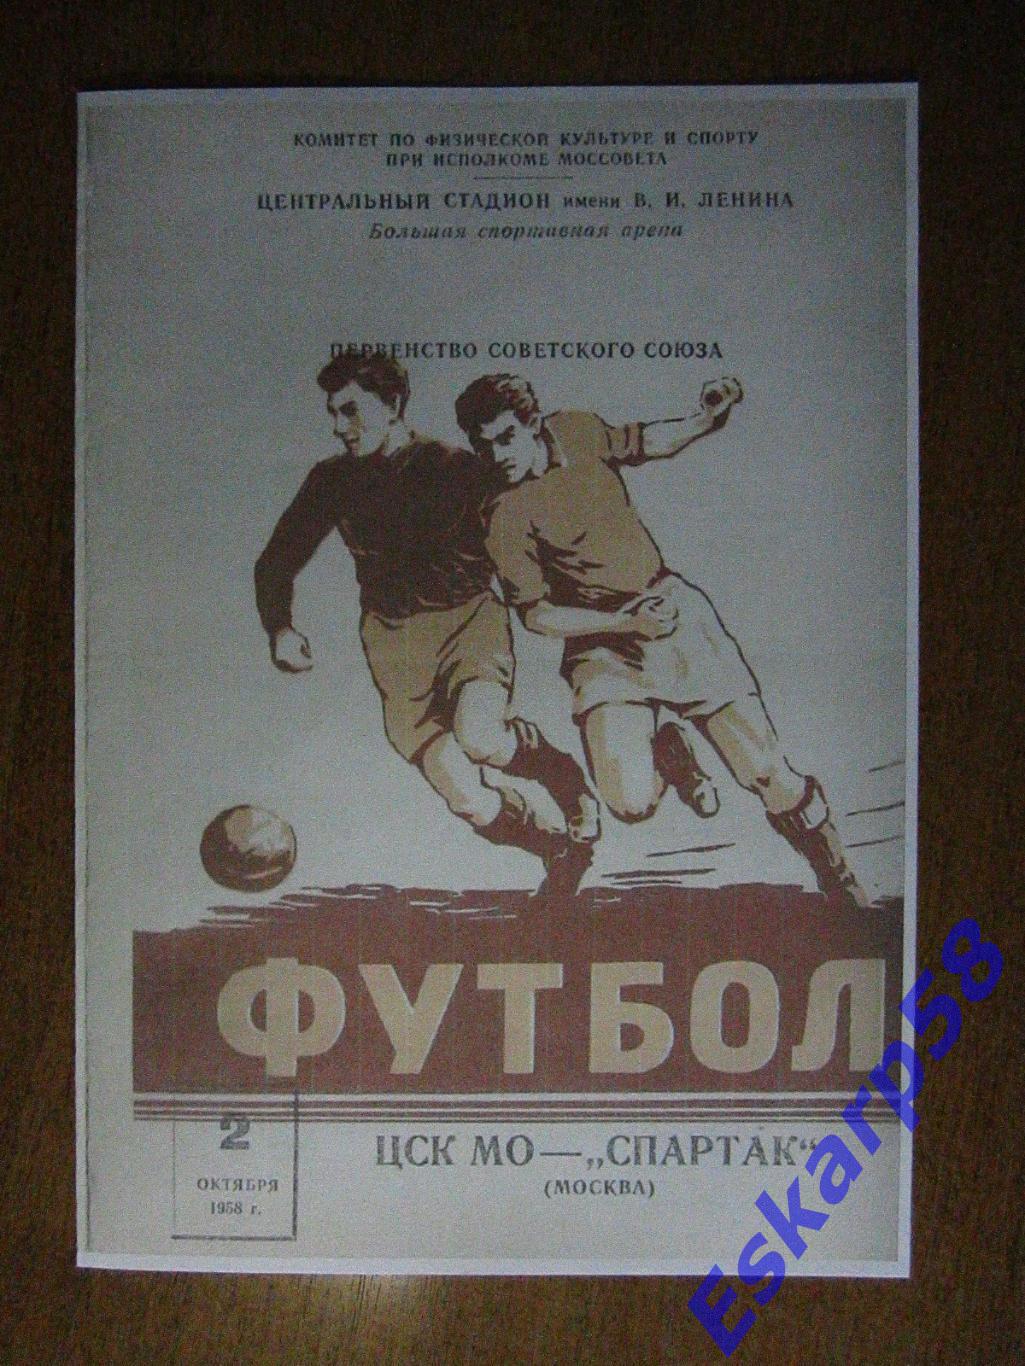 1958. ЦСК МО-Спартак Москва.10.09